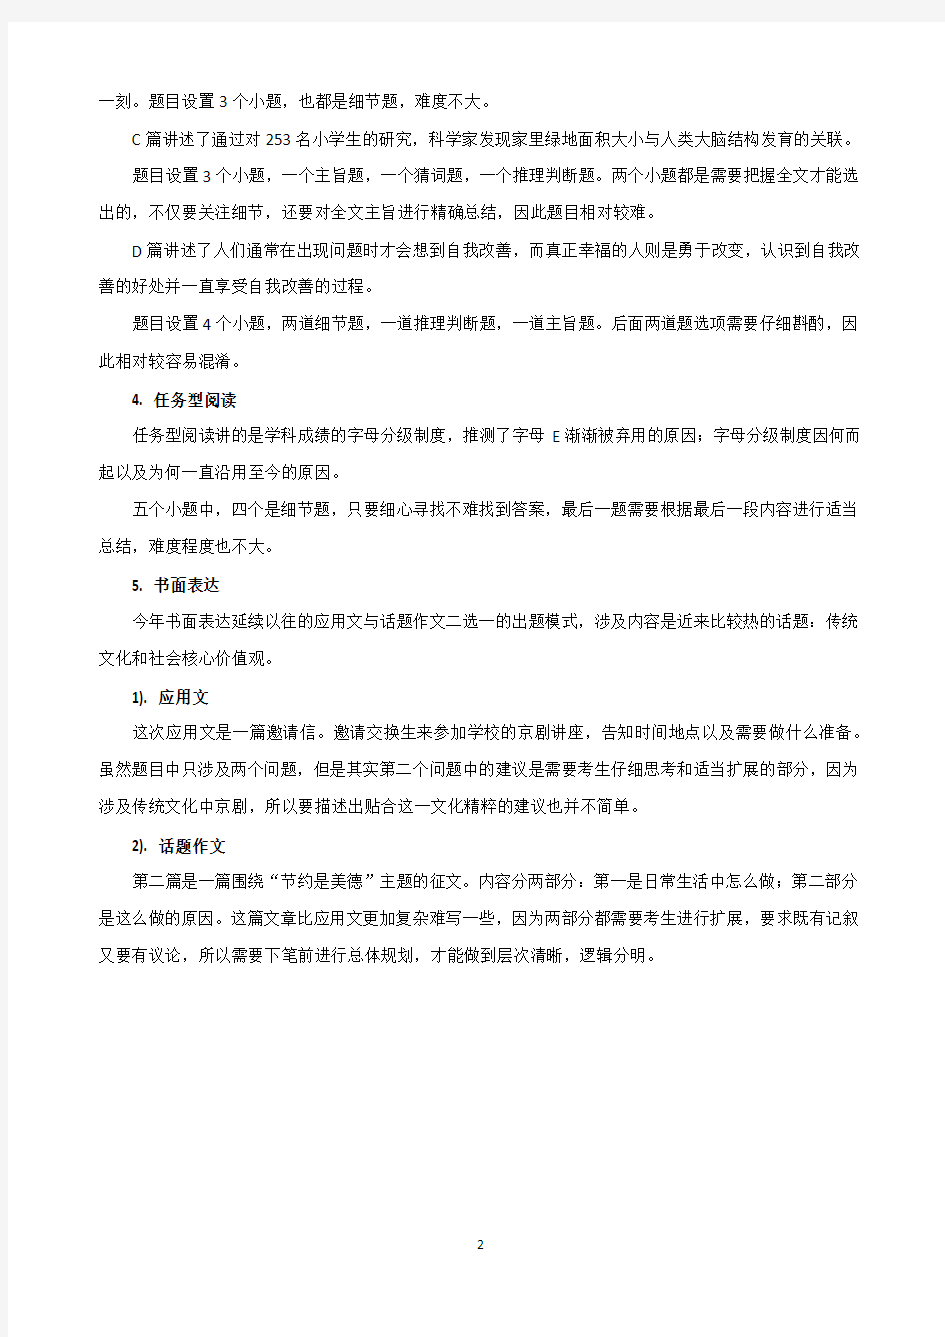 (完整版)2018年北京中考英语试卷解析